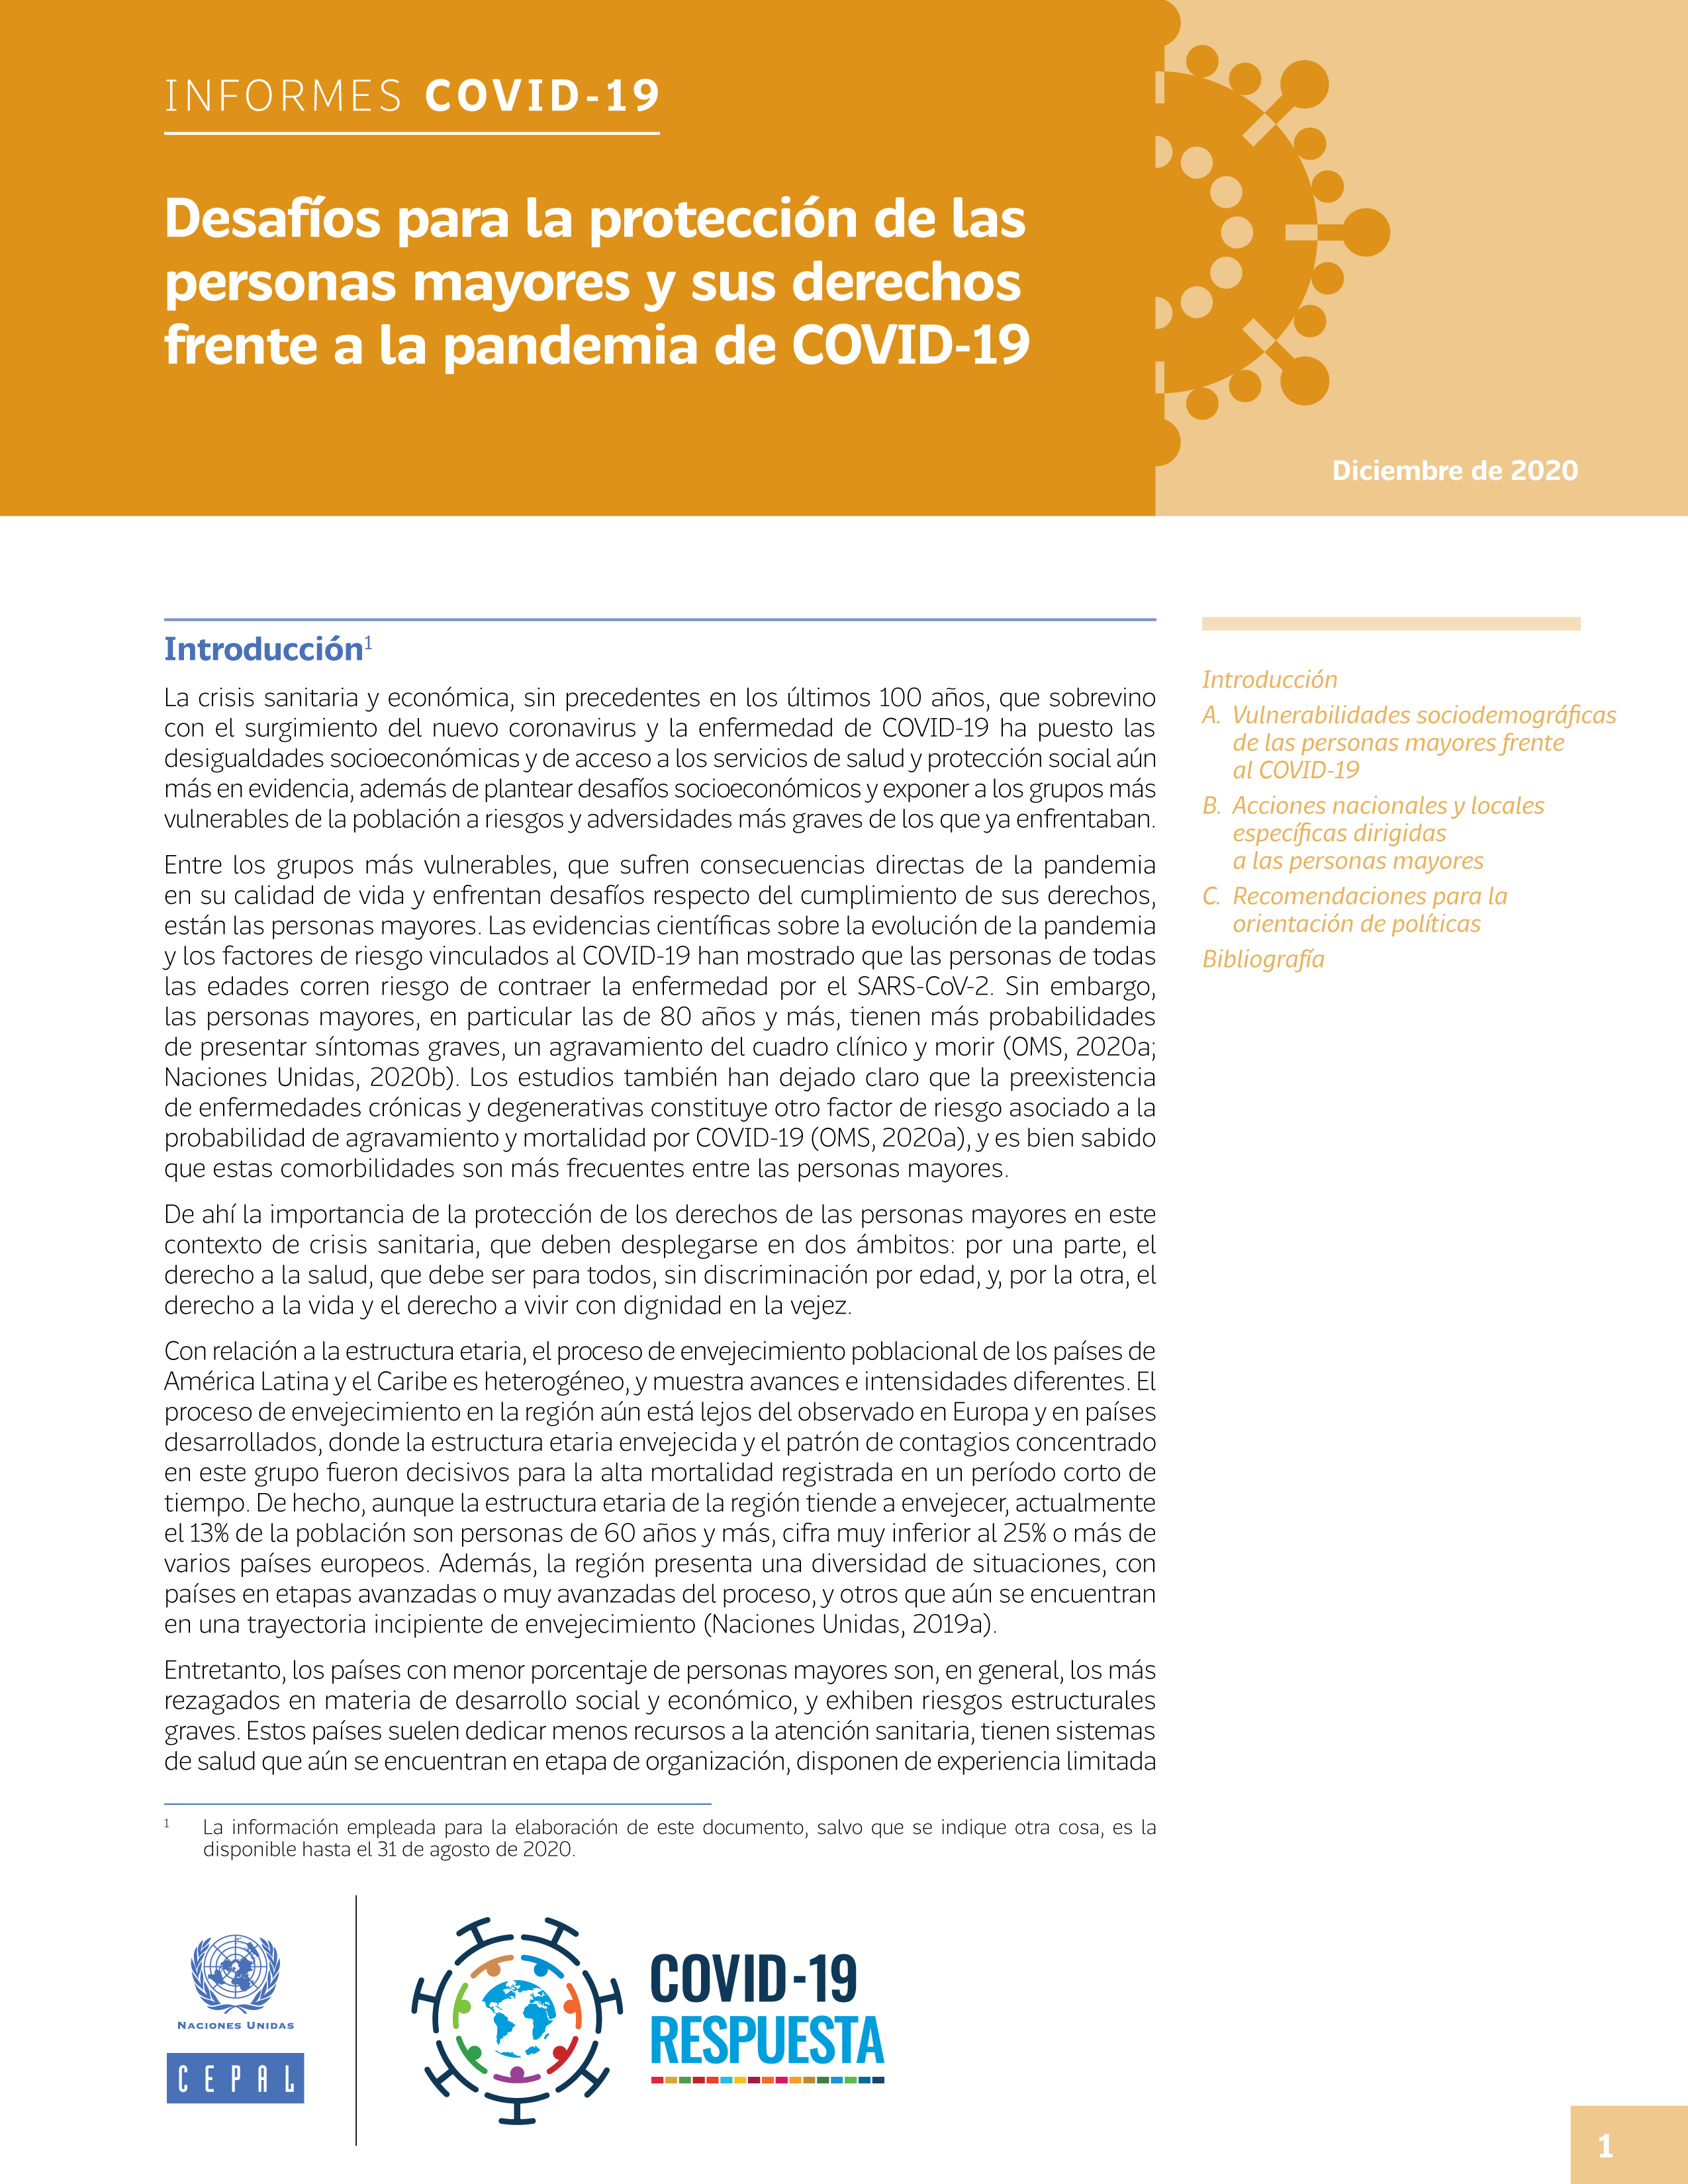 image of Desafíos para la protección de las personas mayores y sus derechos frente a la pandemia de COVID-19